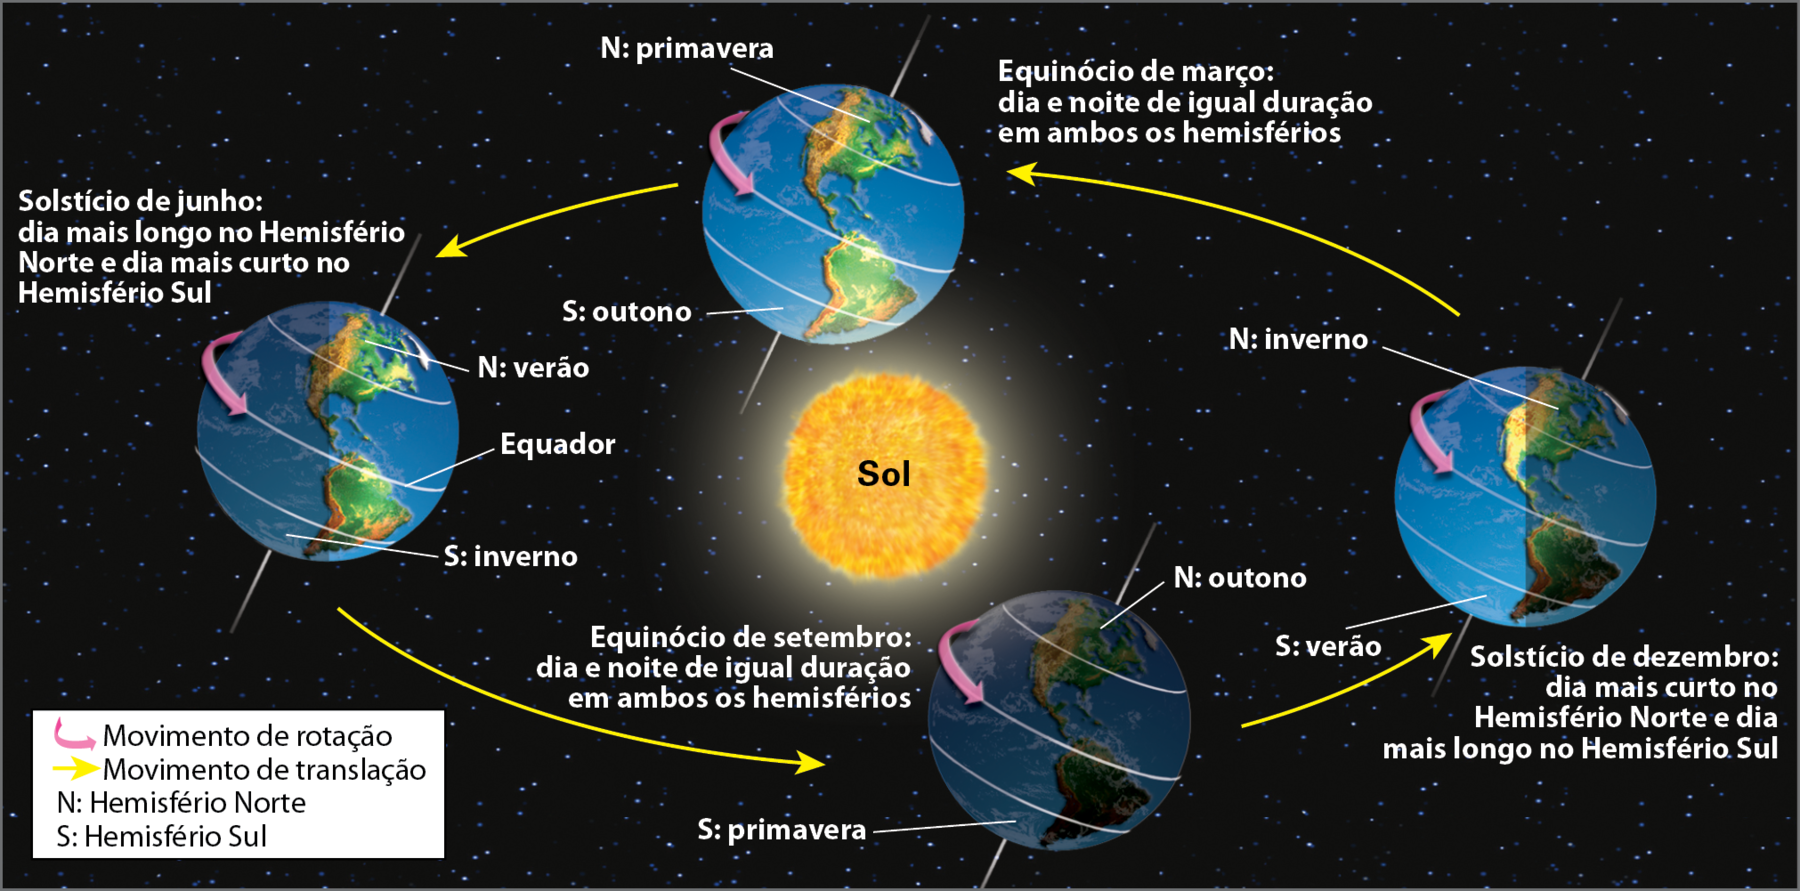 Ilustração. Movimento de translação e as estações do ano. No centro, o Sol. Ao redor do Sol, quatro globos com paralelos e a linha do Equador traçados e, em cada um, seta cor de rosa indicando o movimento de rotação.
Globo terrestre posicionado ao lado do Sol, à esquerda, representando o solstício de junho: dia mais longo no Hemisfério Norte e dia mais curto no Hemisfério Sul. No globo, indicação de que, é inverno no Hemisfério Sul e verão no Hemisfério Norte. 
Globo terrestre posicionado embaixo do Sol, um pouco mais à direita, representando o equinócio de setembro: dia e noite de igual duração em ambos os hemisférios. No globo, indicação de que é primavera no Hemisfério Sul e outono no Hemisfério Norte.
Globo terrestre posicionado ao lado do Sol, à direita, representando o solstício de dezembro: dia mais curto no Hemisfério Norte e dia mais longo no Hemisfério Sul. No globo, indicação de que é verão no Hemisfério Sul e inverno no Hemisfério Norte.
Globo terrestre posicionado acima do Sol, um pouco mais à esquerda, representando ao equinócio de março: dia e noite de igual duração em ambos os hemisférios. No globo, indicação de que é outono no Hemisfério Sul e primavera no Hemisfério Norte.